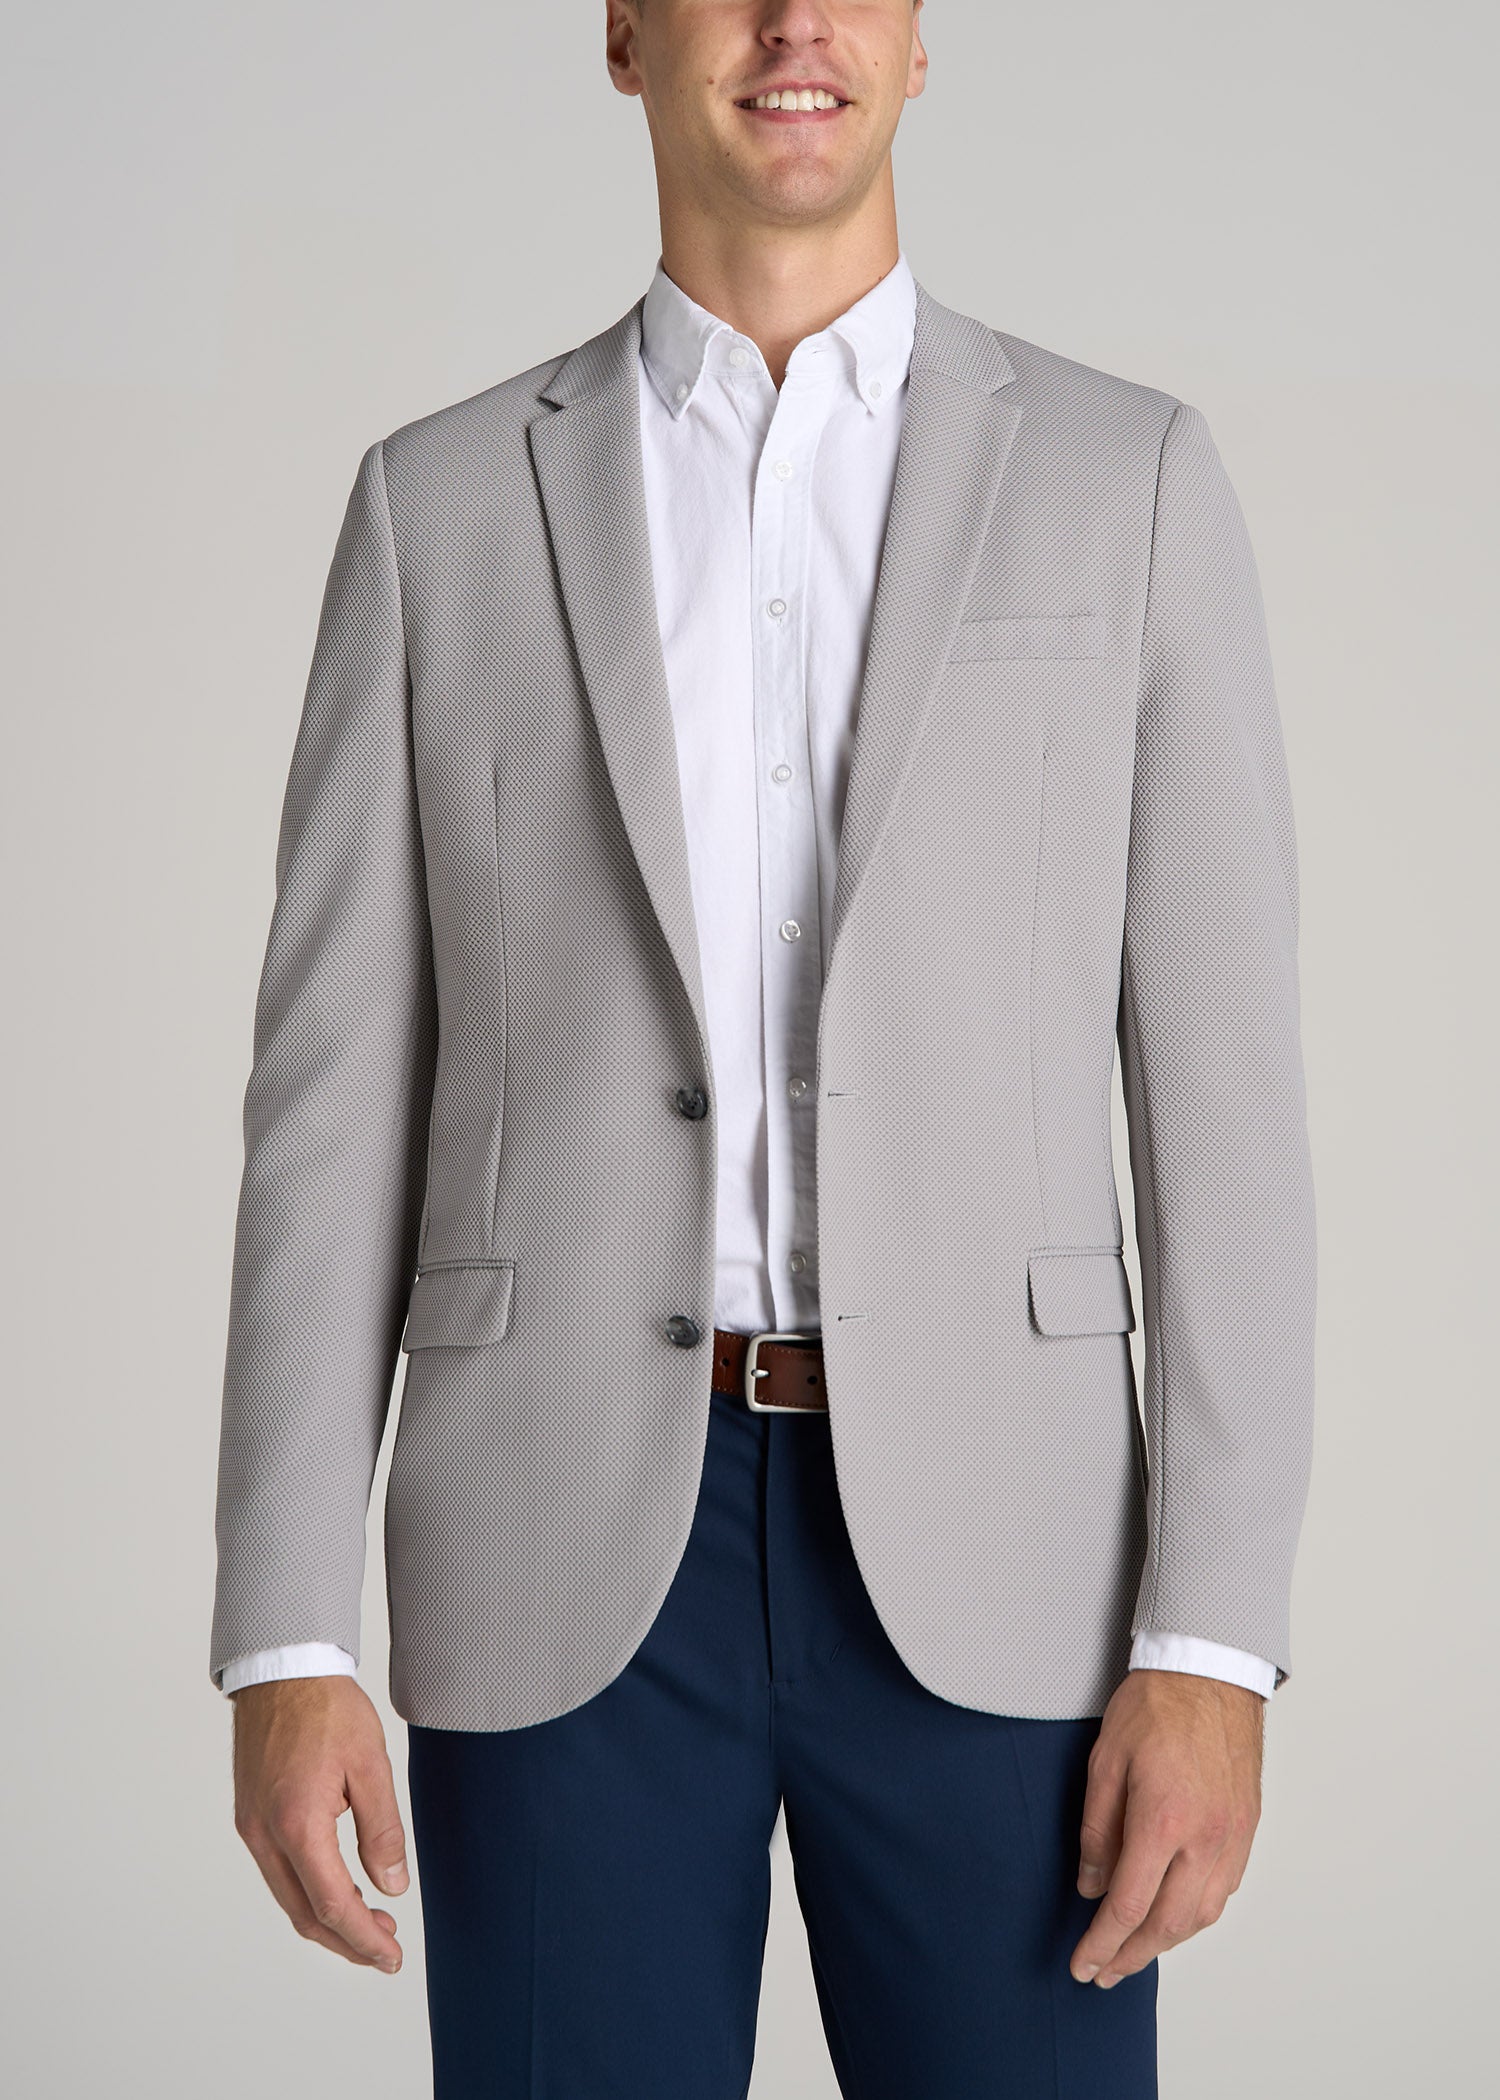 Men's Textured Gray Suit